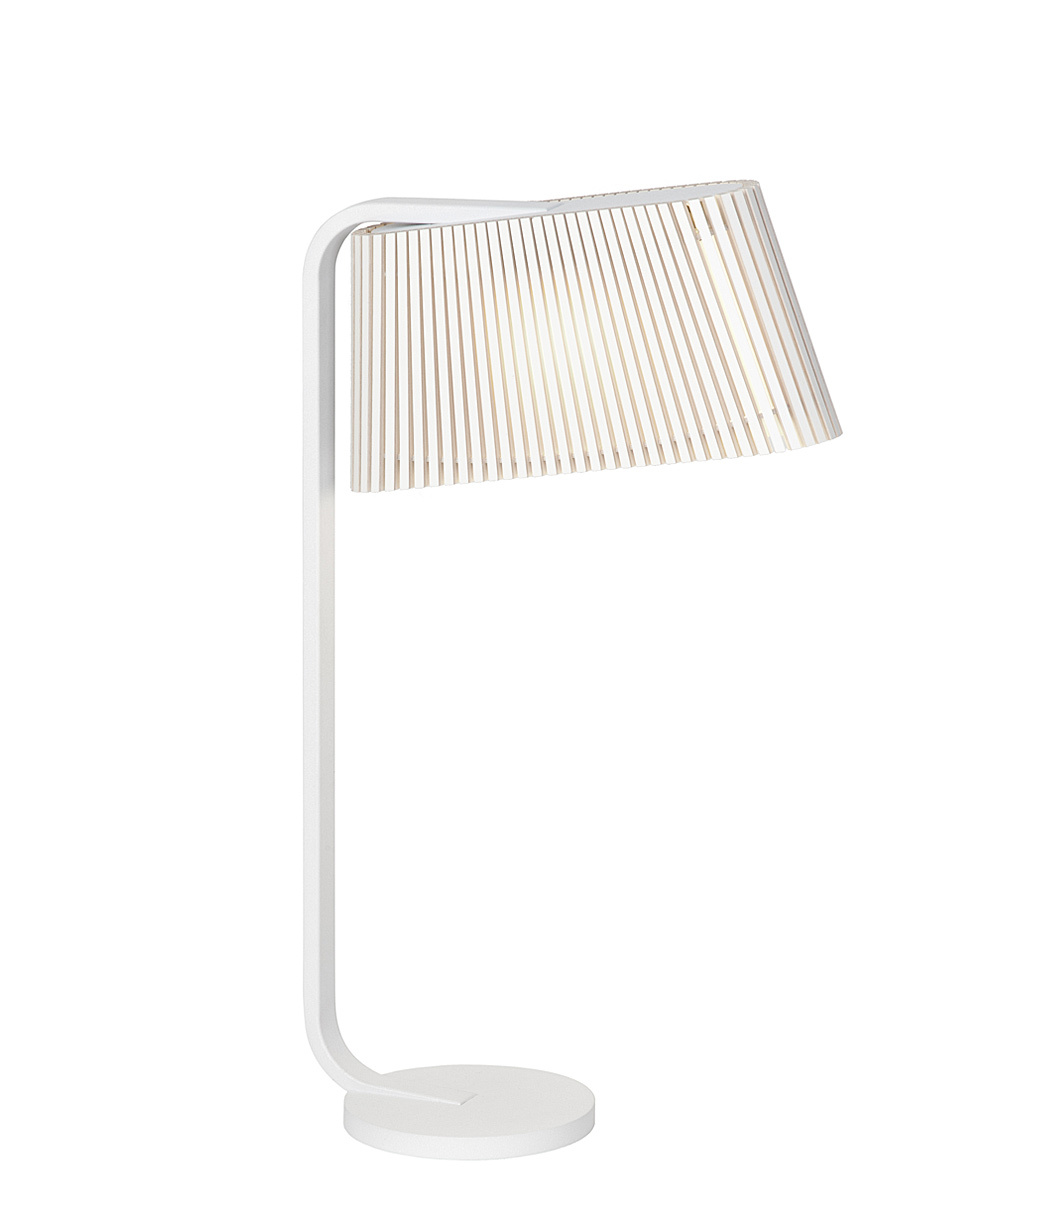 Lampe de table Owalo 7020 est disponible en stratifié blanc